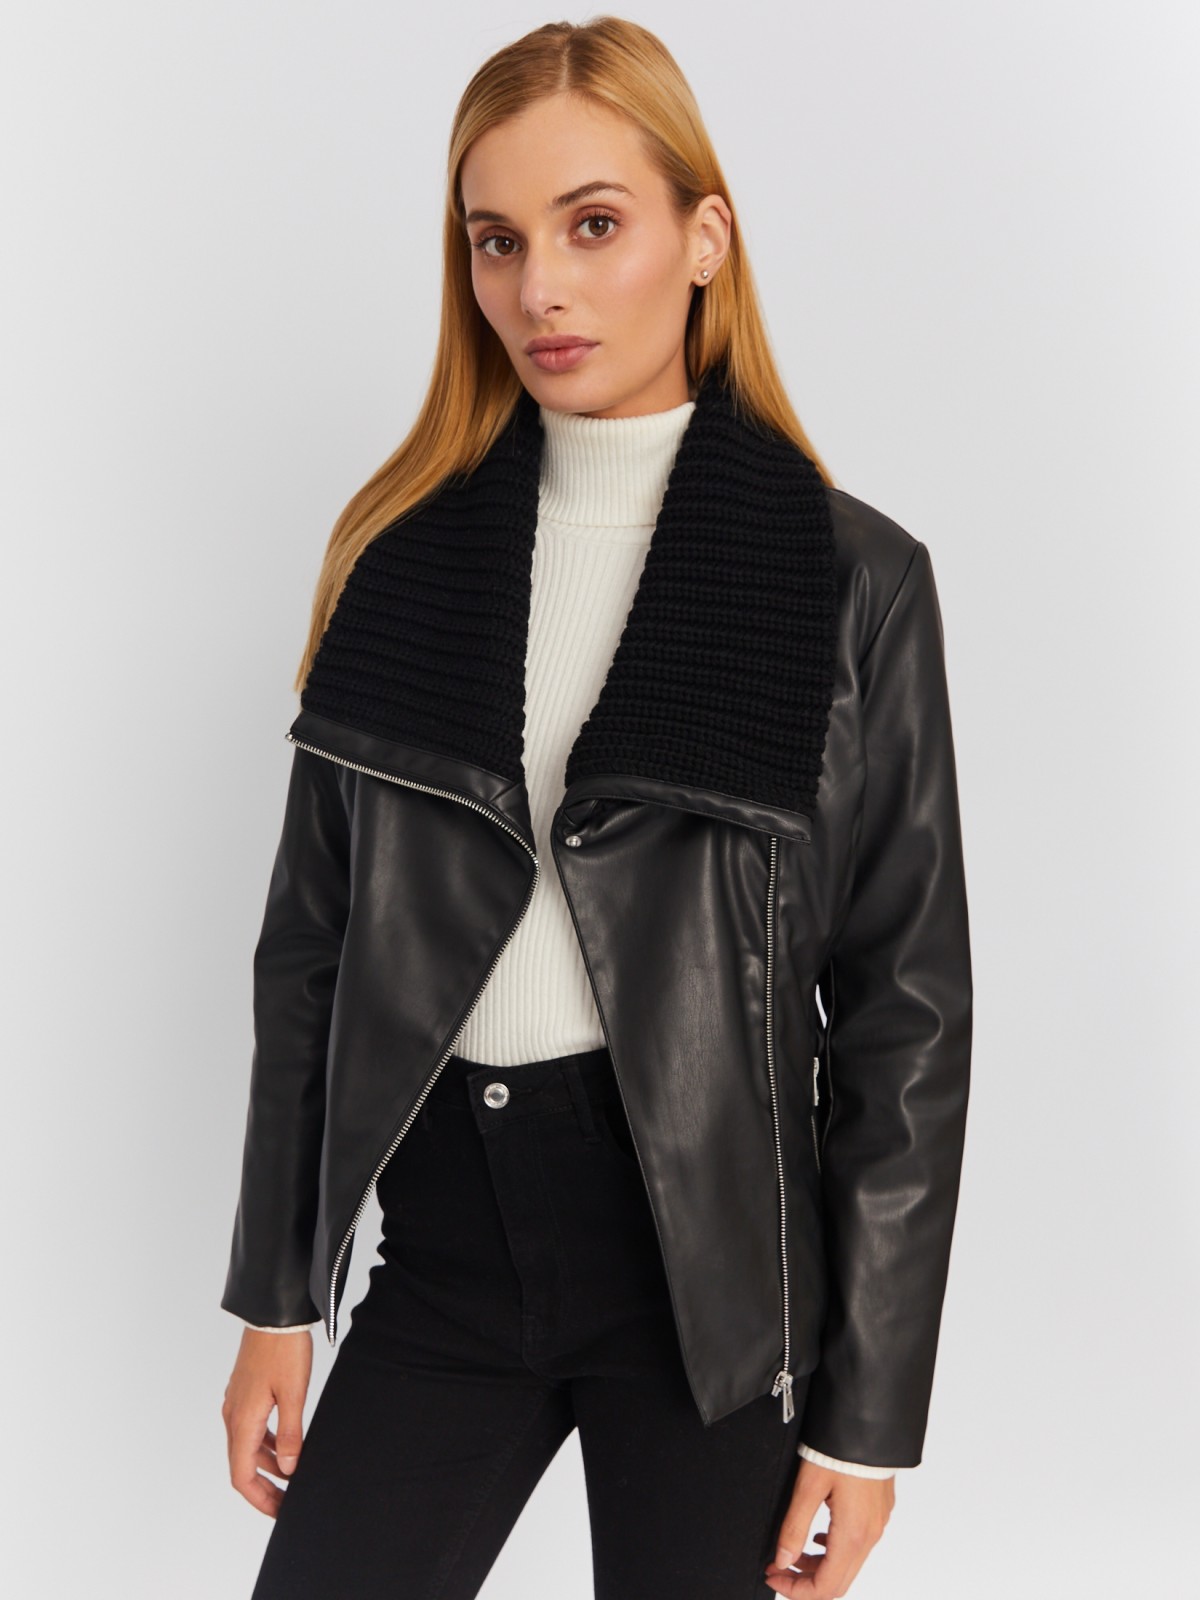 Тёплая куртка-косуха из экокожи на синтепоне с поясом zolla 023335150014, цвет черный, размер M